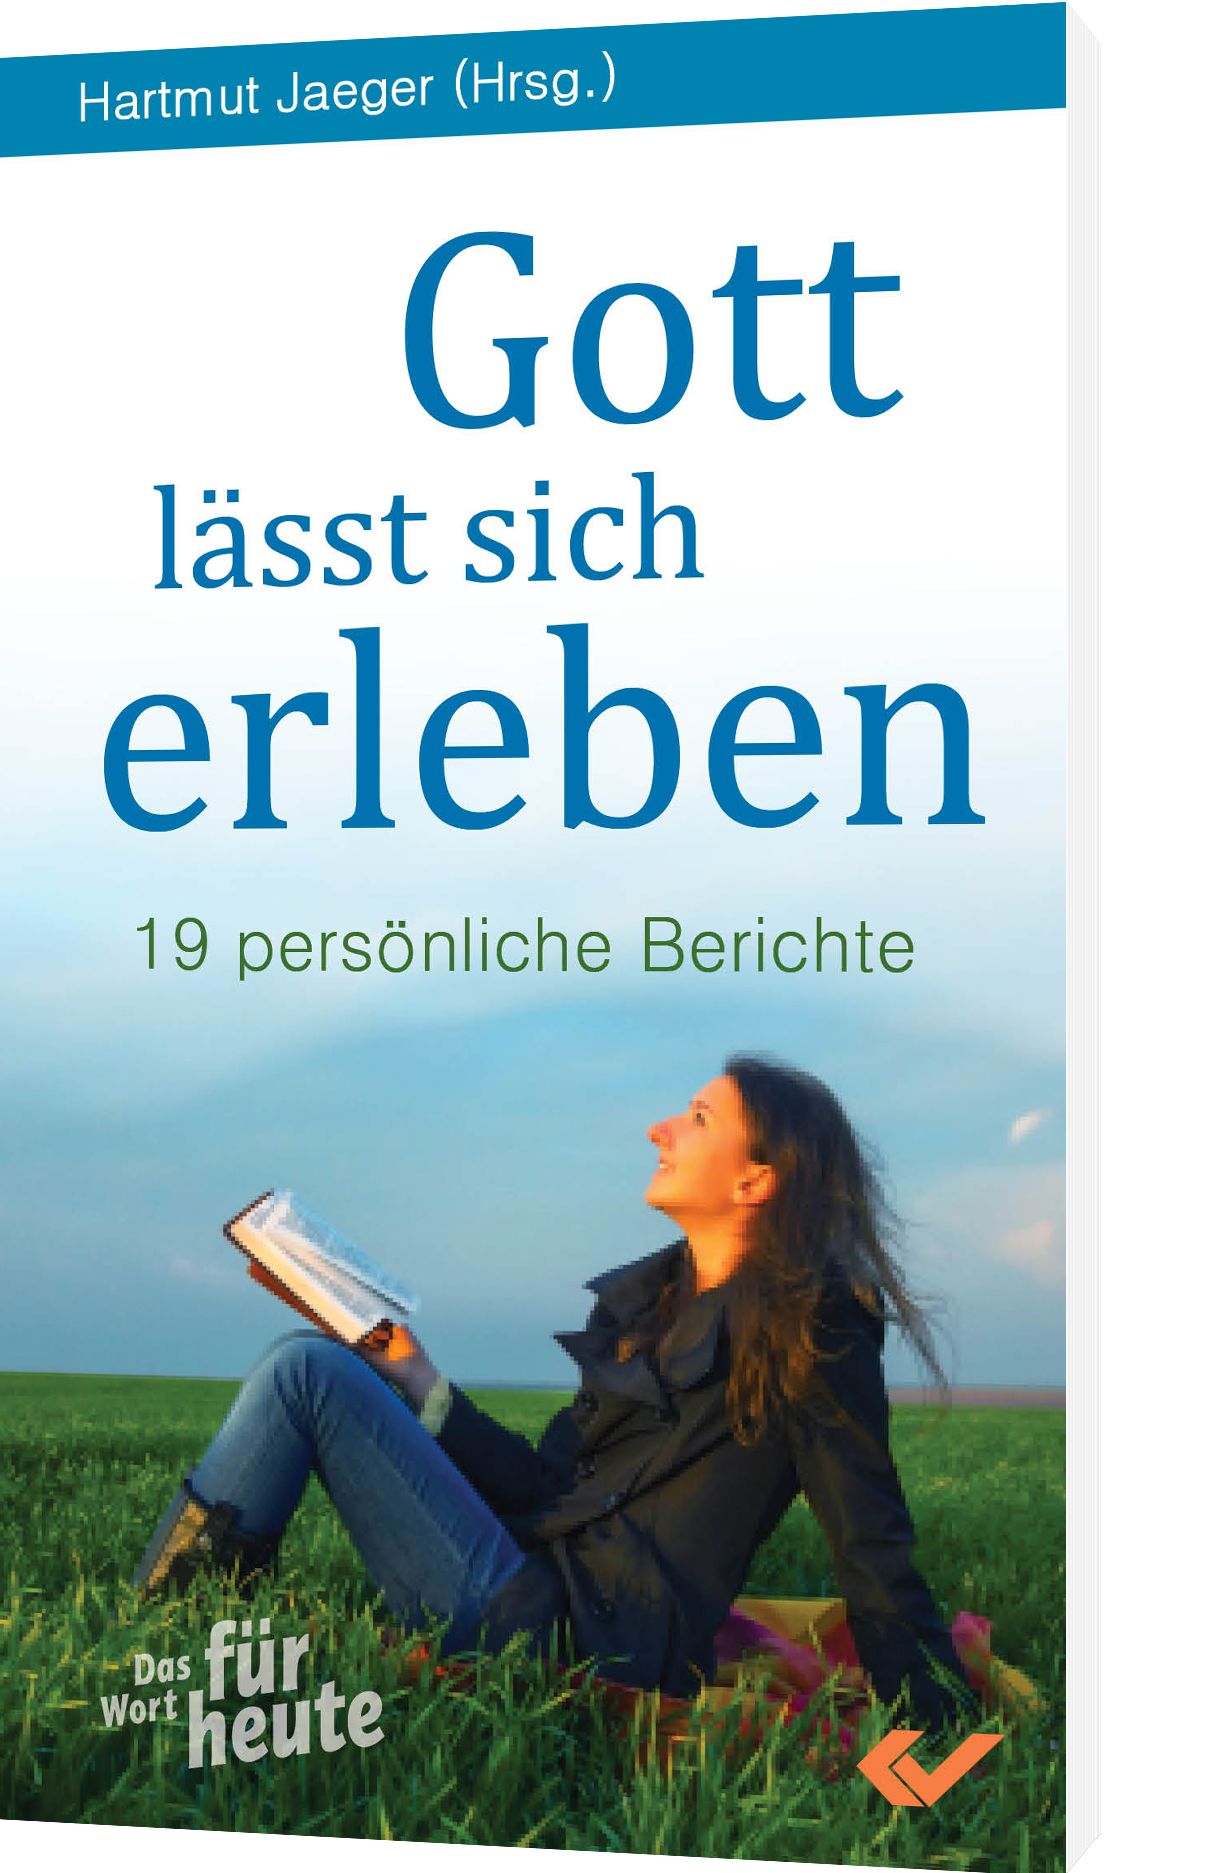 Hartmut Jaeger (Hg.): Gott lässt sich erleben - 19 persönliche Berichte